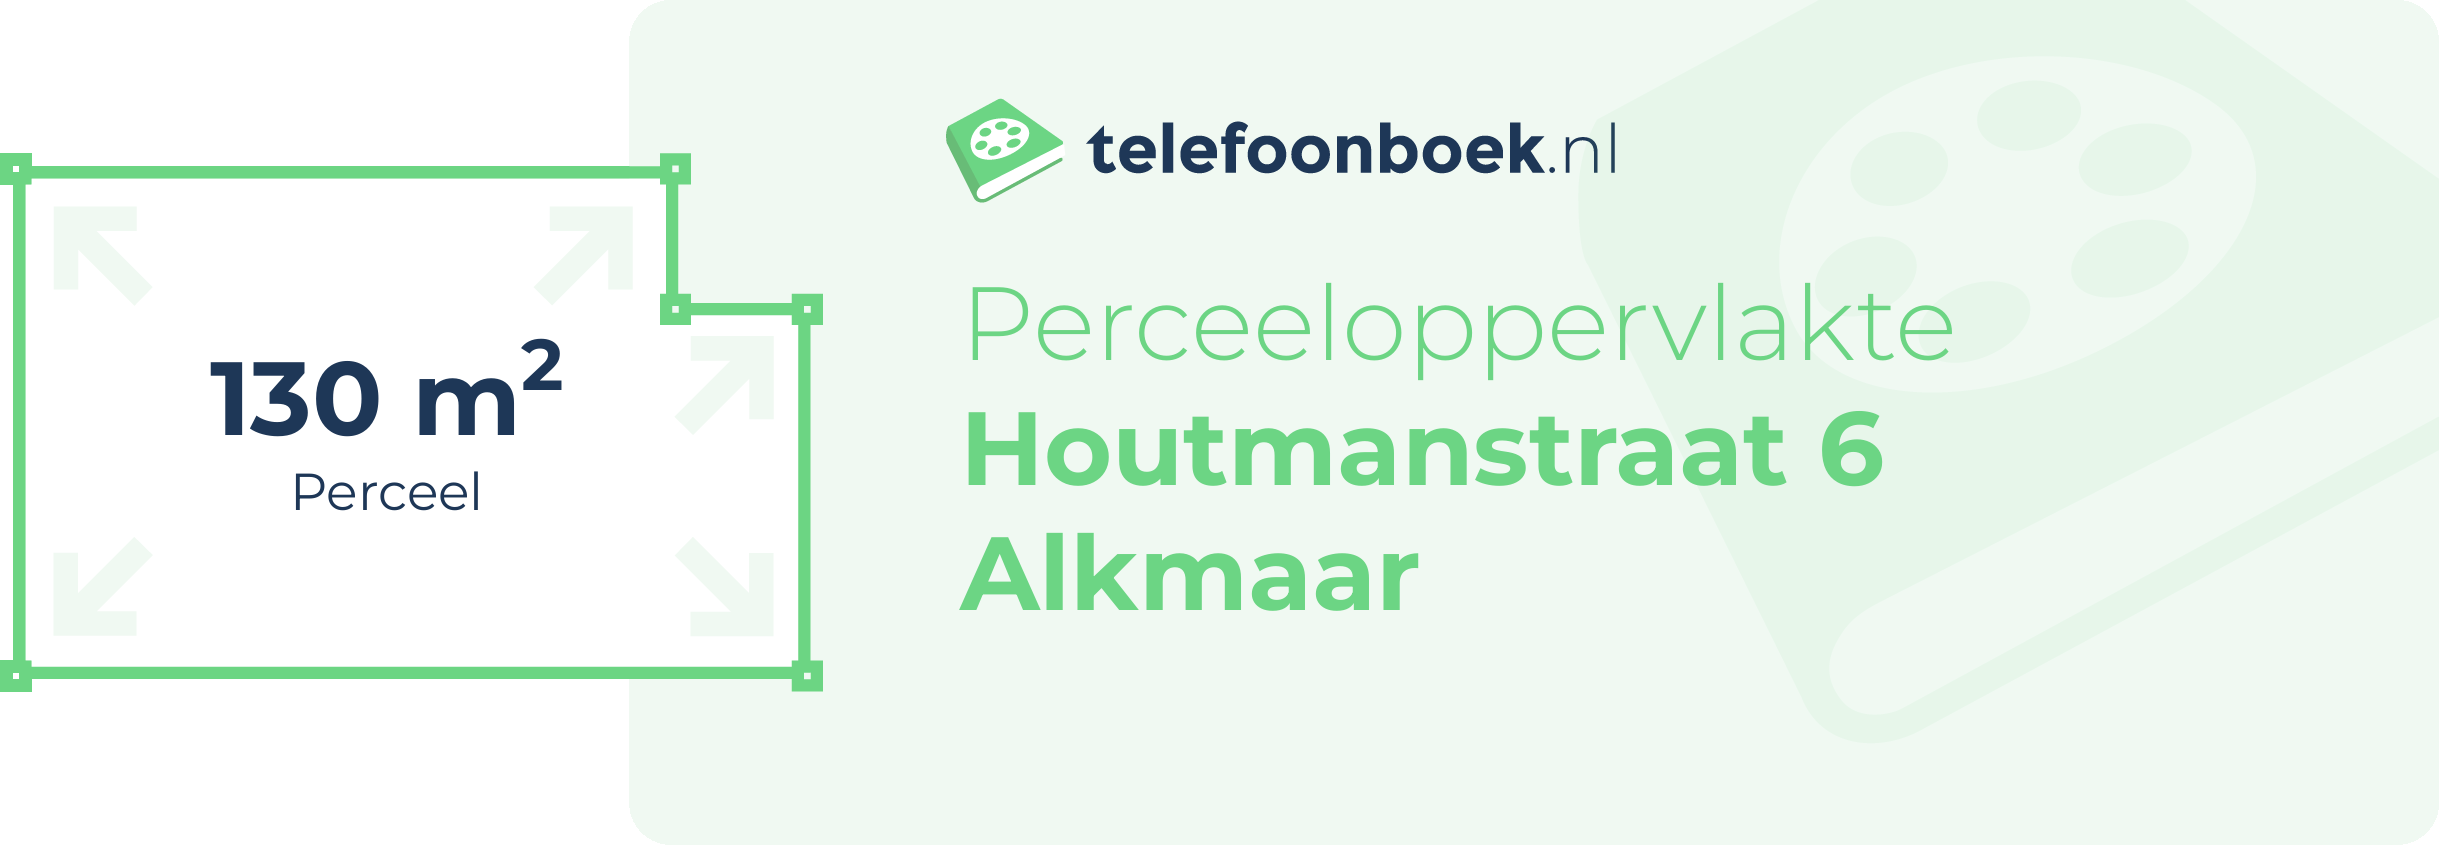 Perceeloppervlakte Houtmanstraat 6 Alkmaar